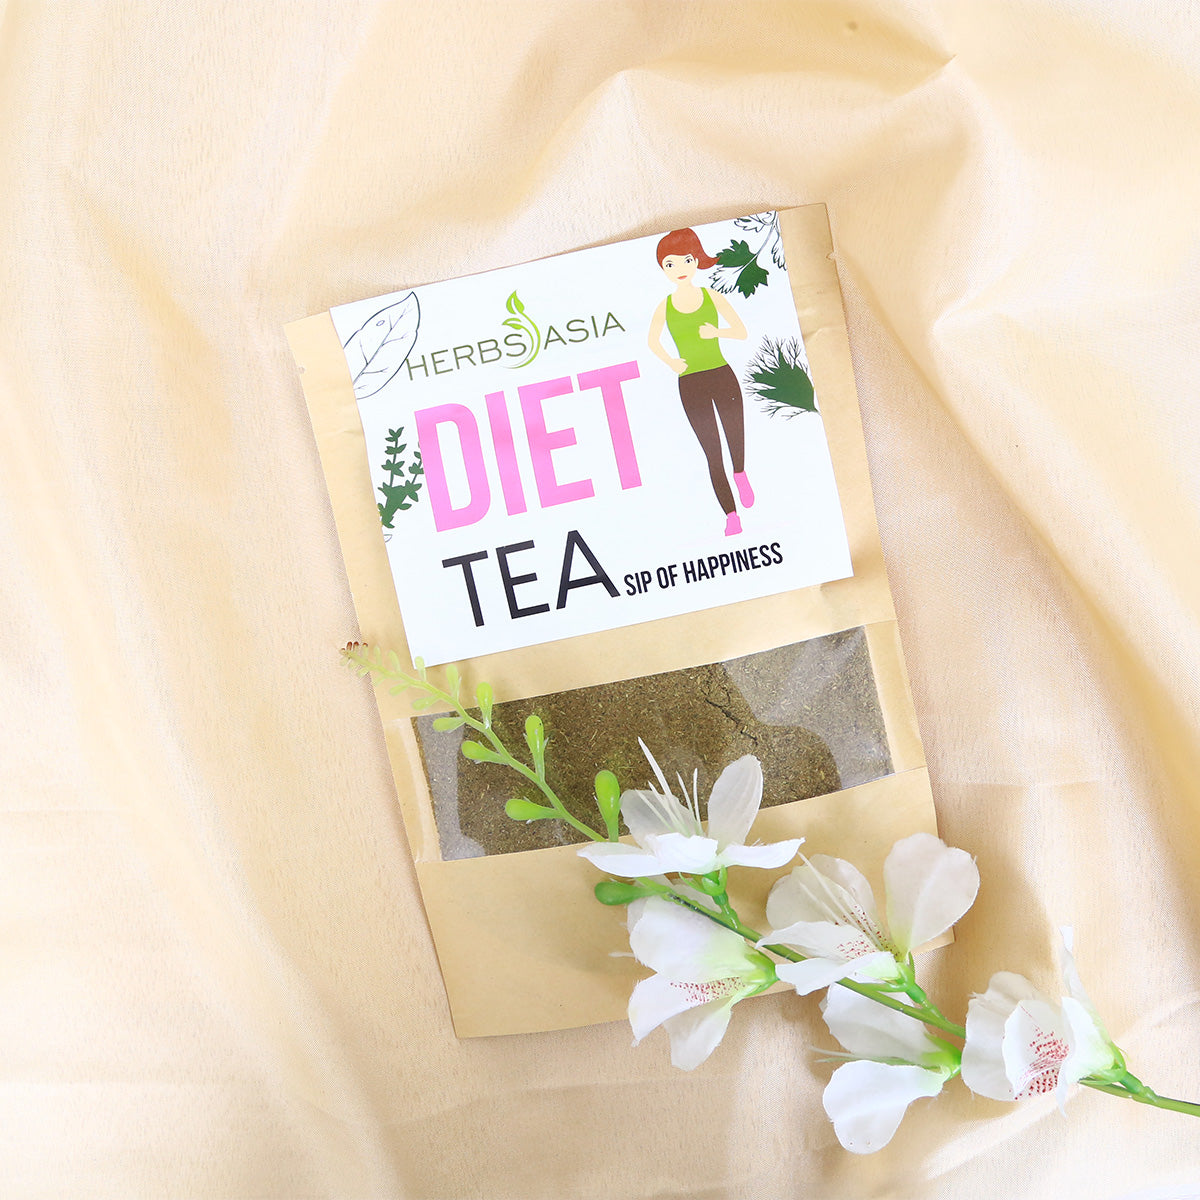 Diet Tea